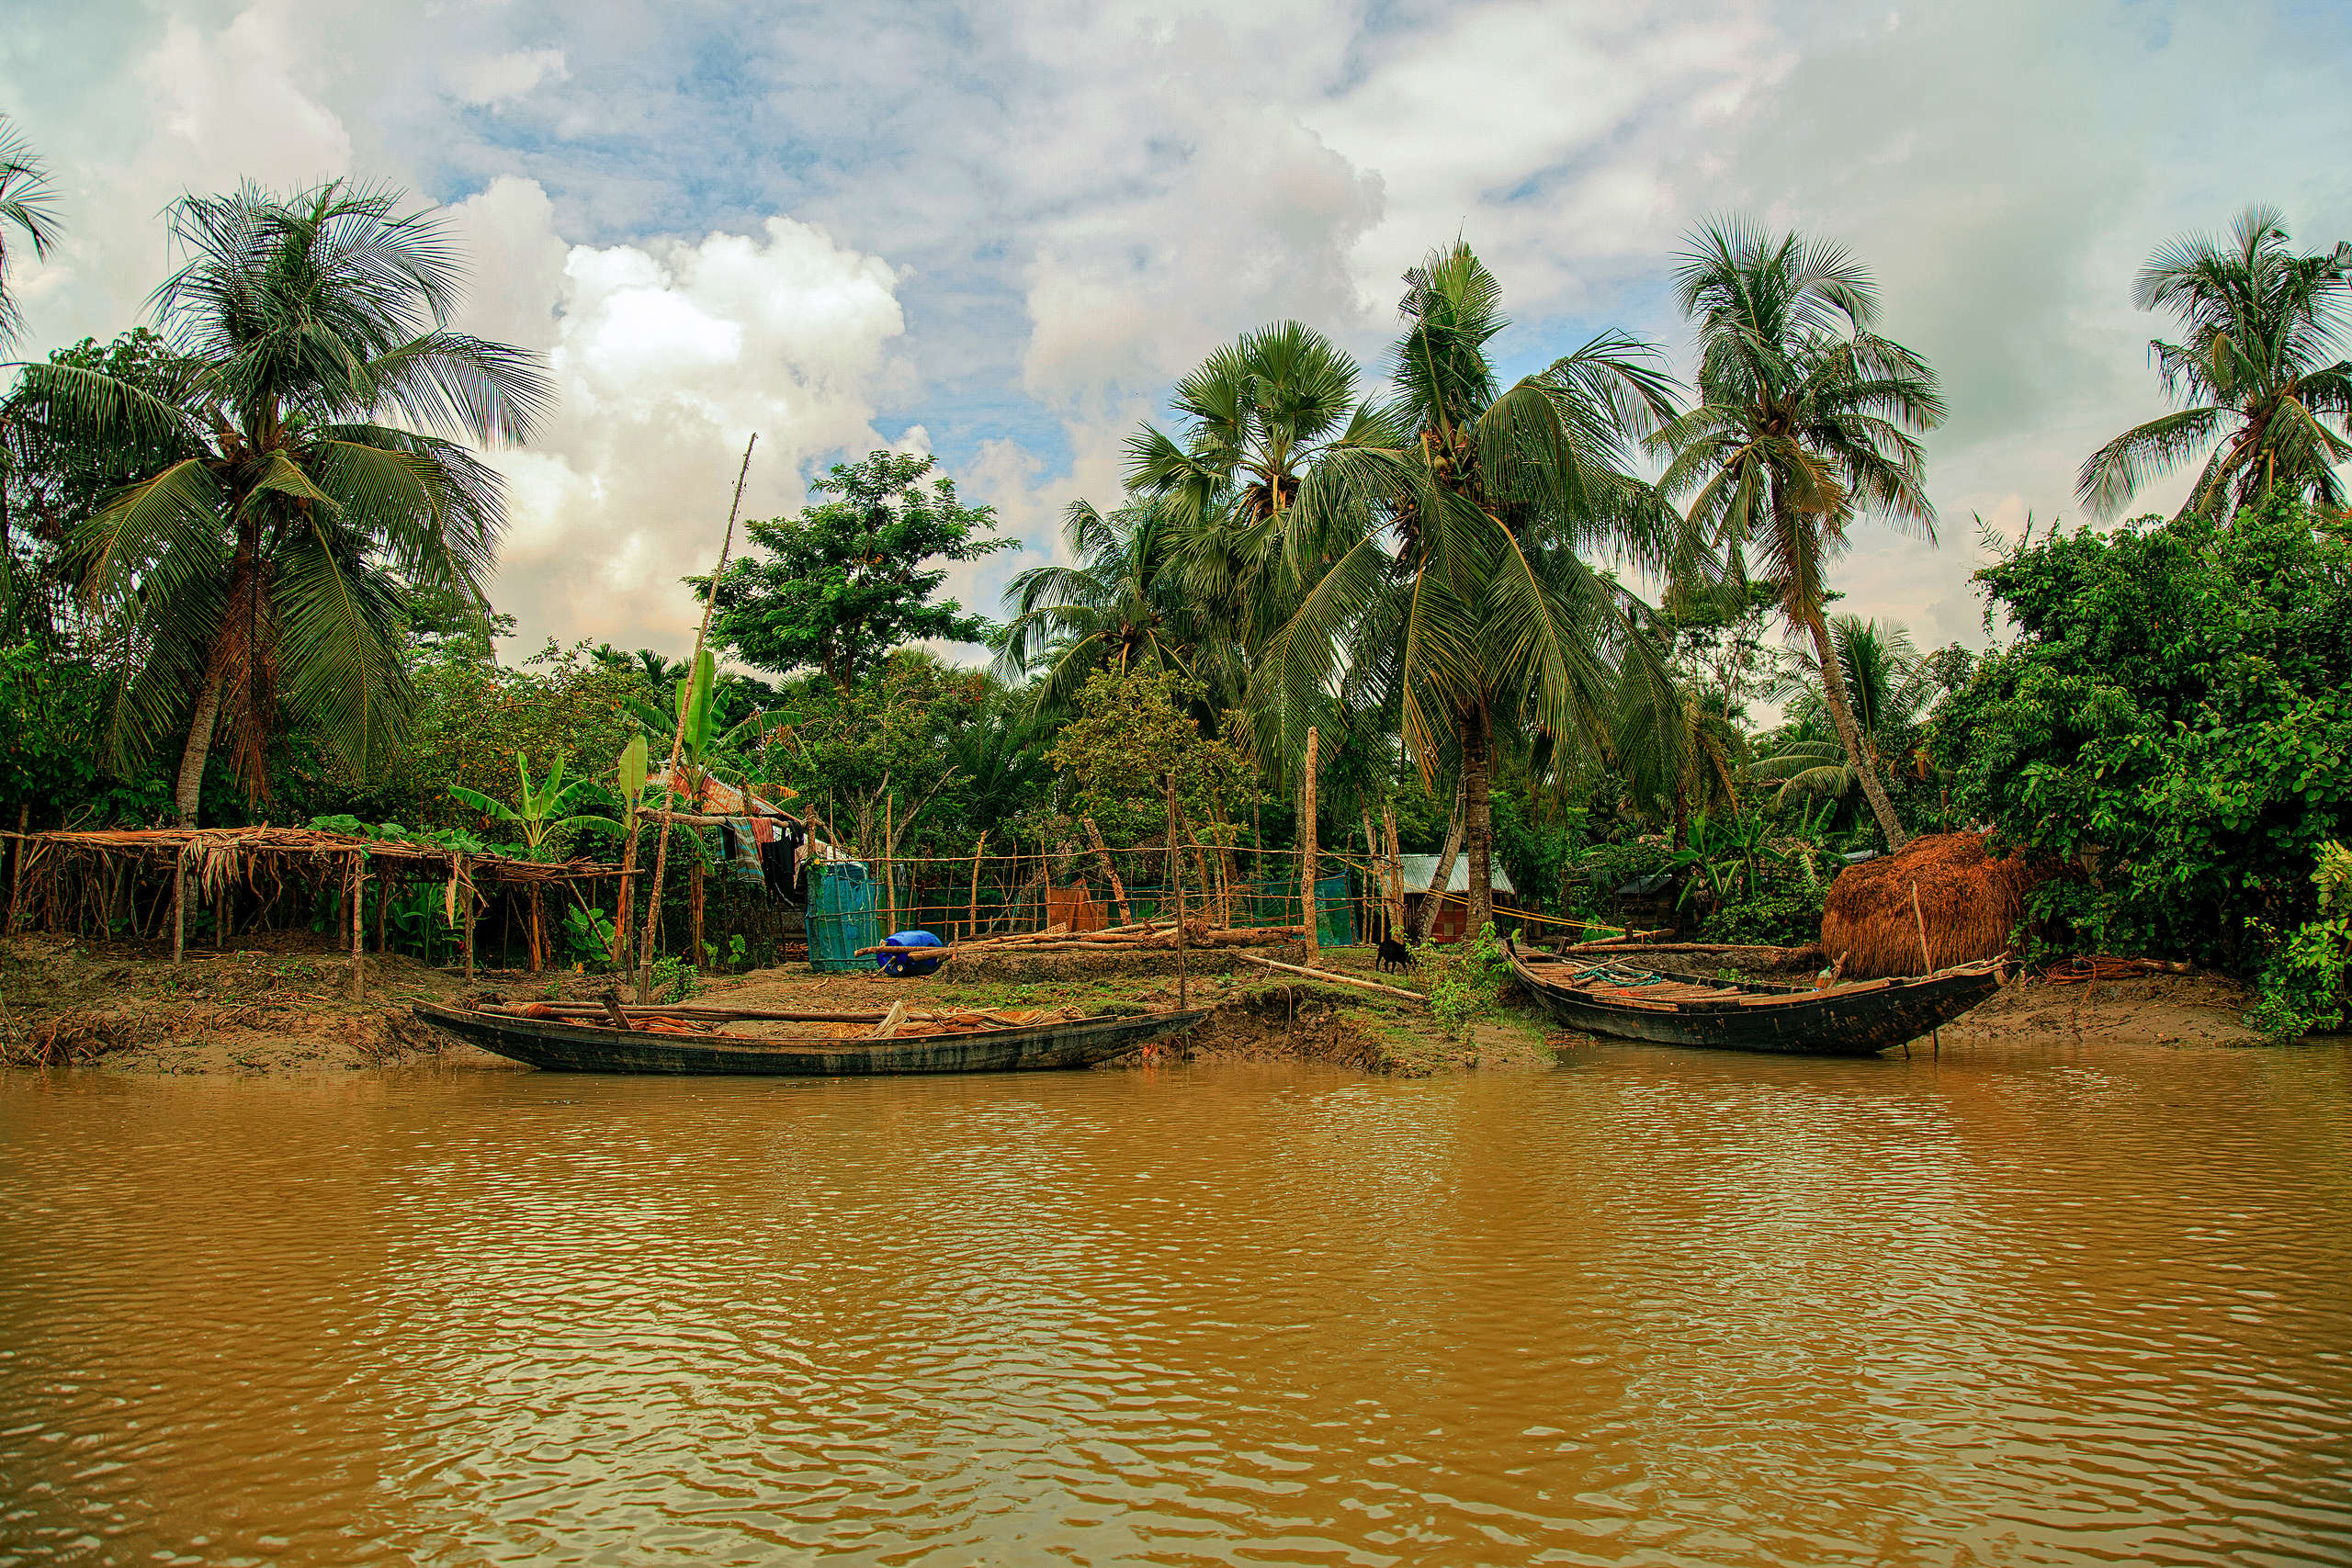 蘇達班島是世界最大的單塊潮汐嗜鹽紅樹林，被列為聯合國教科文組織世界遺產，也是孟加拉虎生活的重要區域。